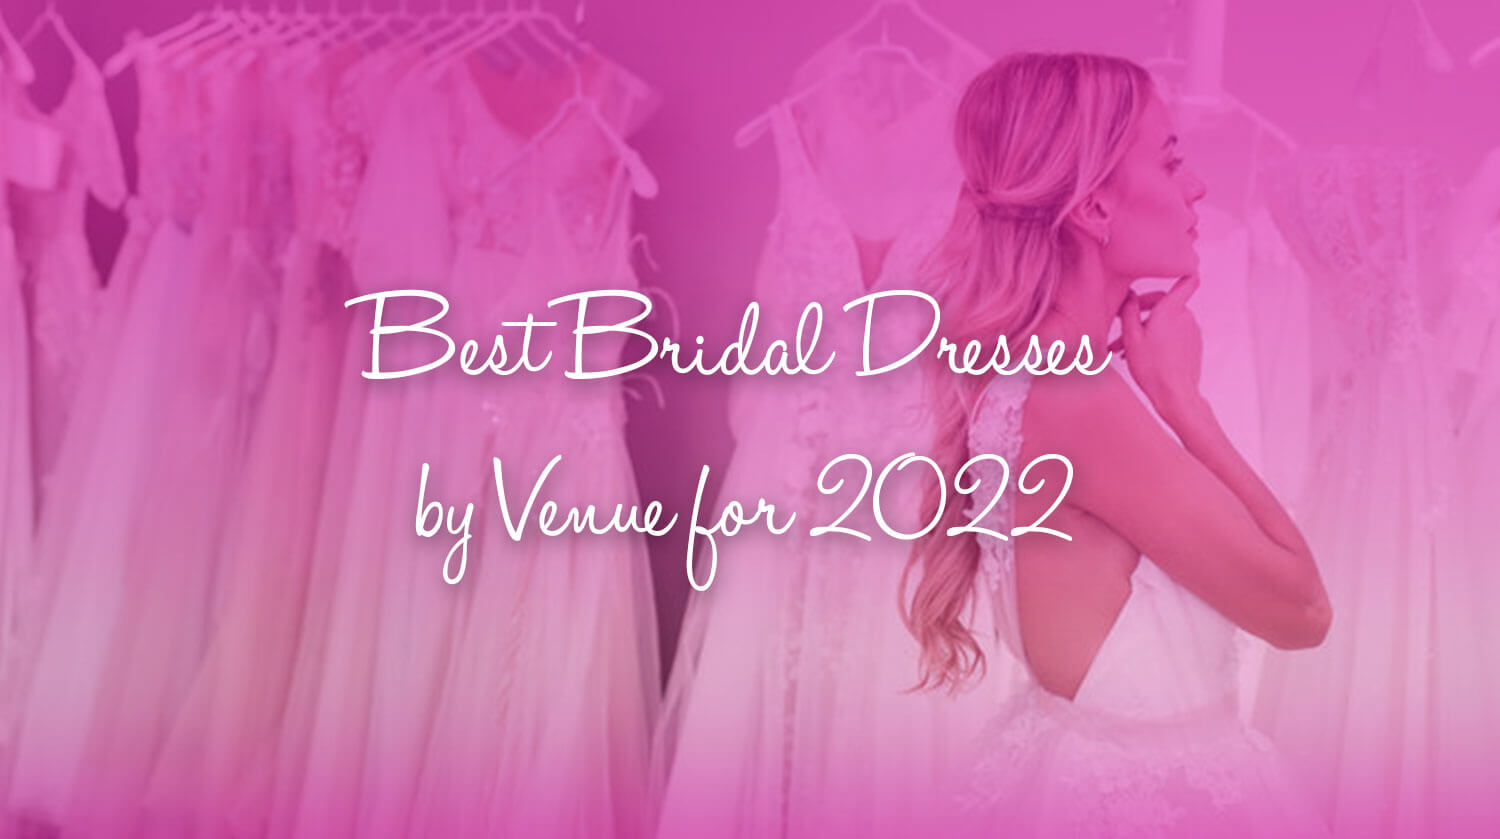 header image "Best bridal dresses by venue for 2022"